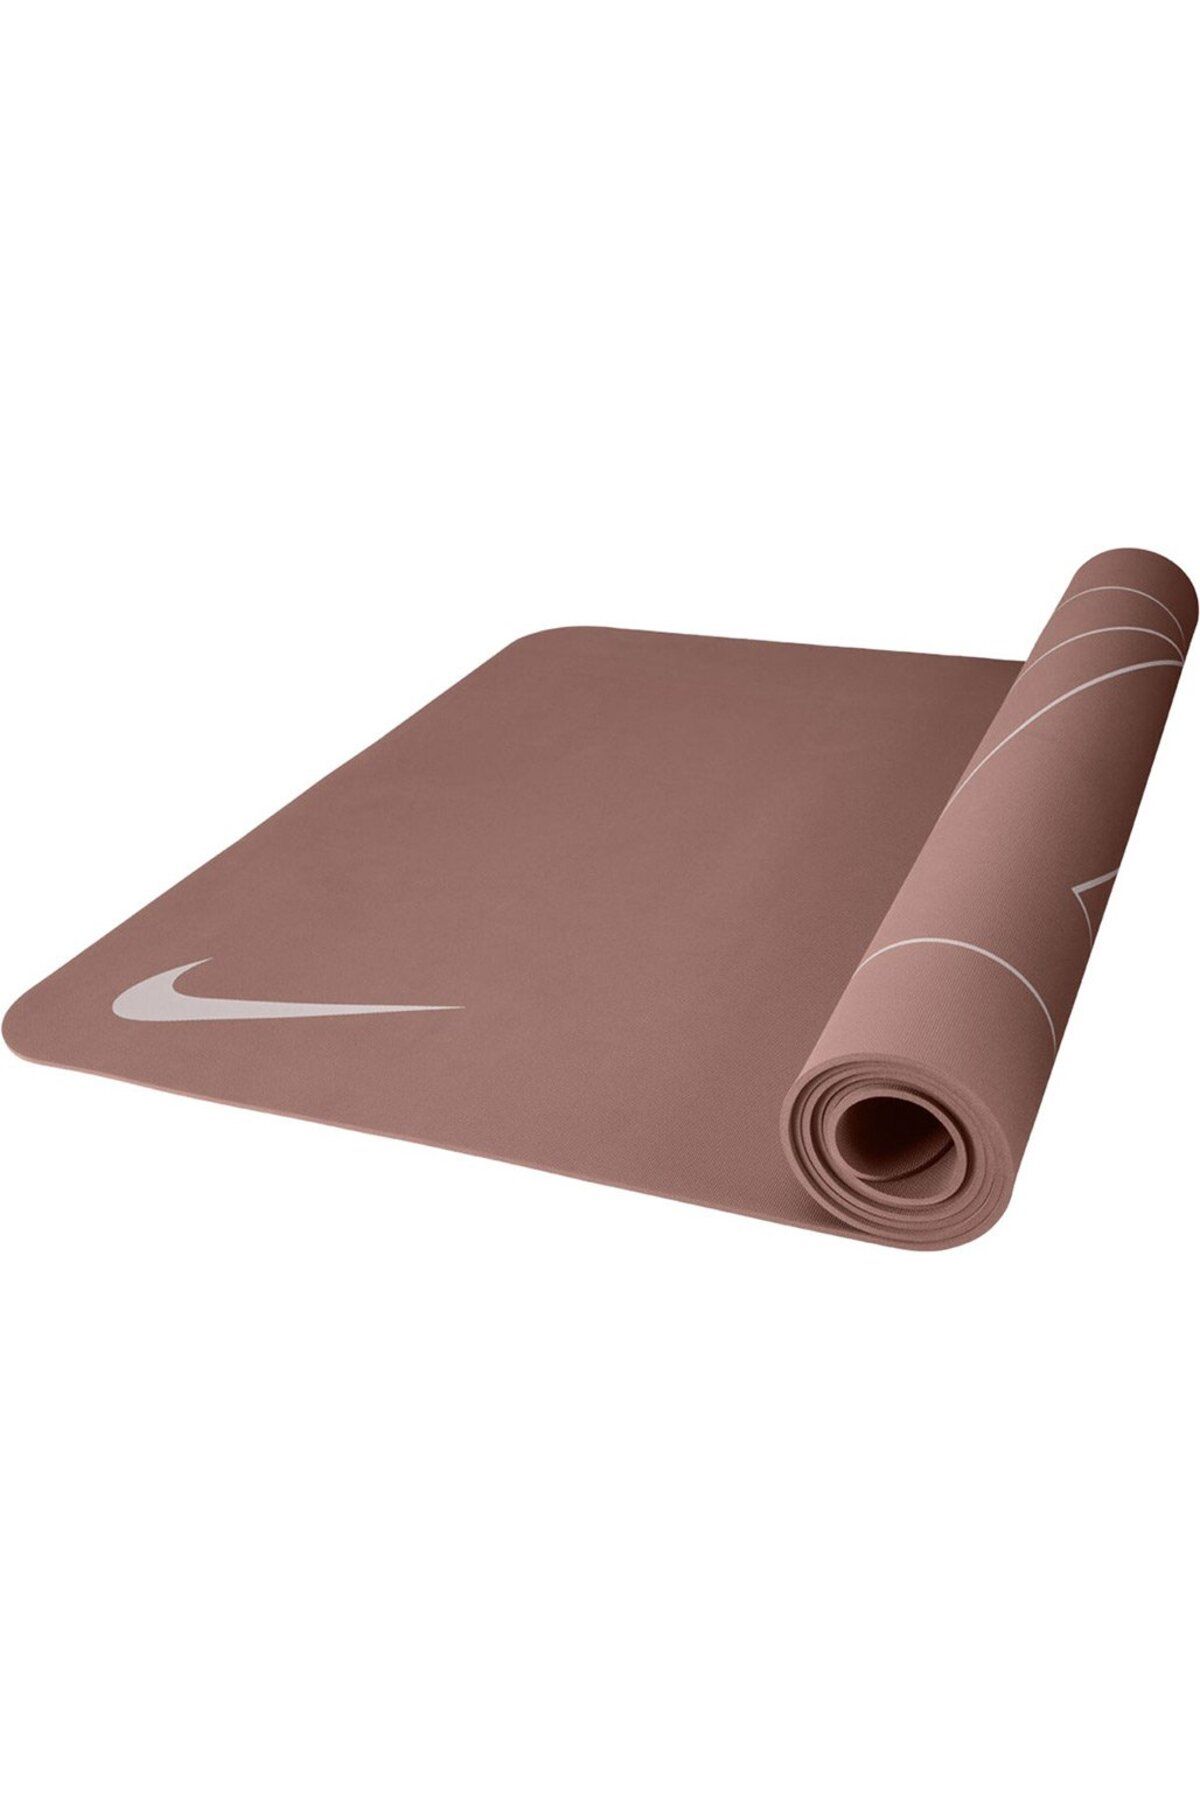 Двусторонний коврик для йоги Nike, 4 мм, коричневый 22840